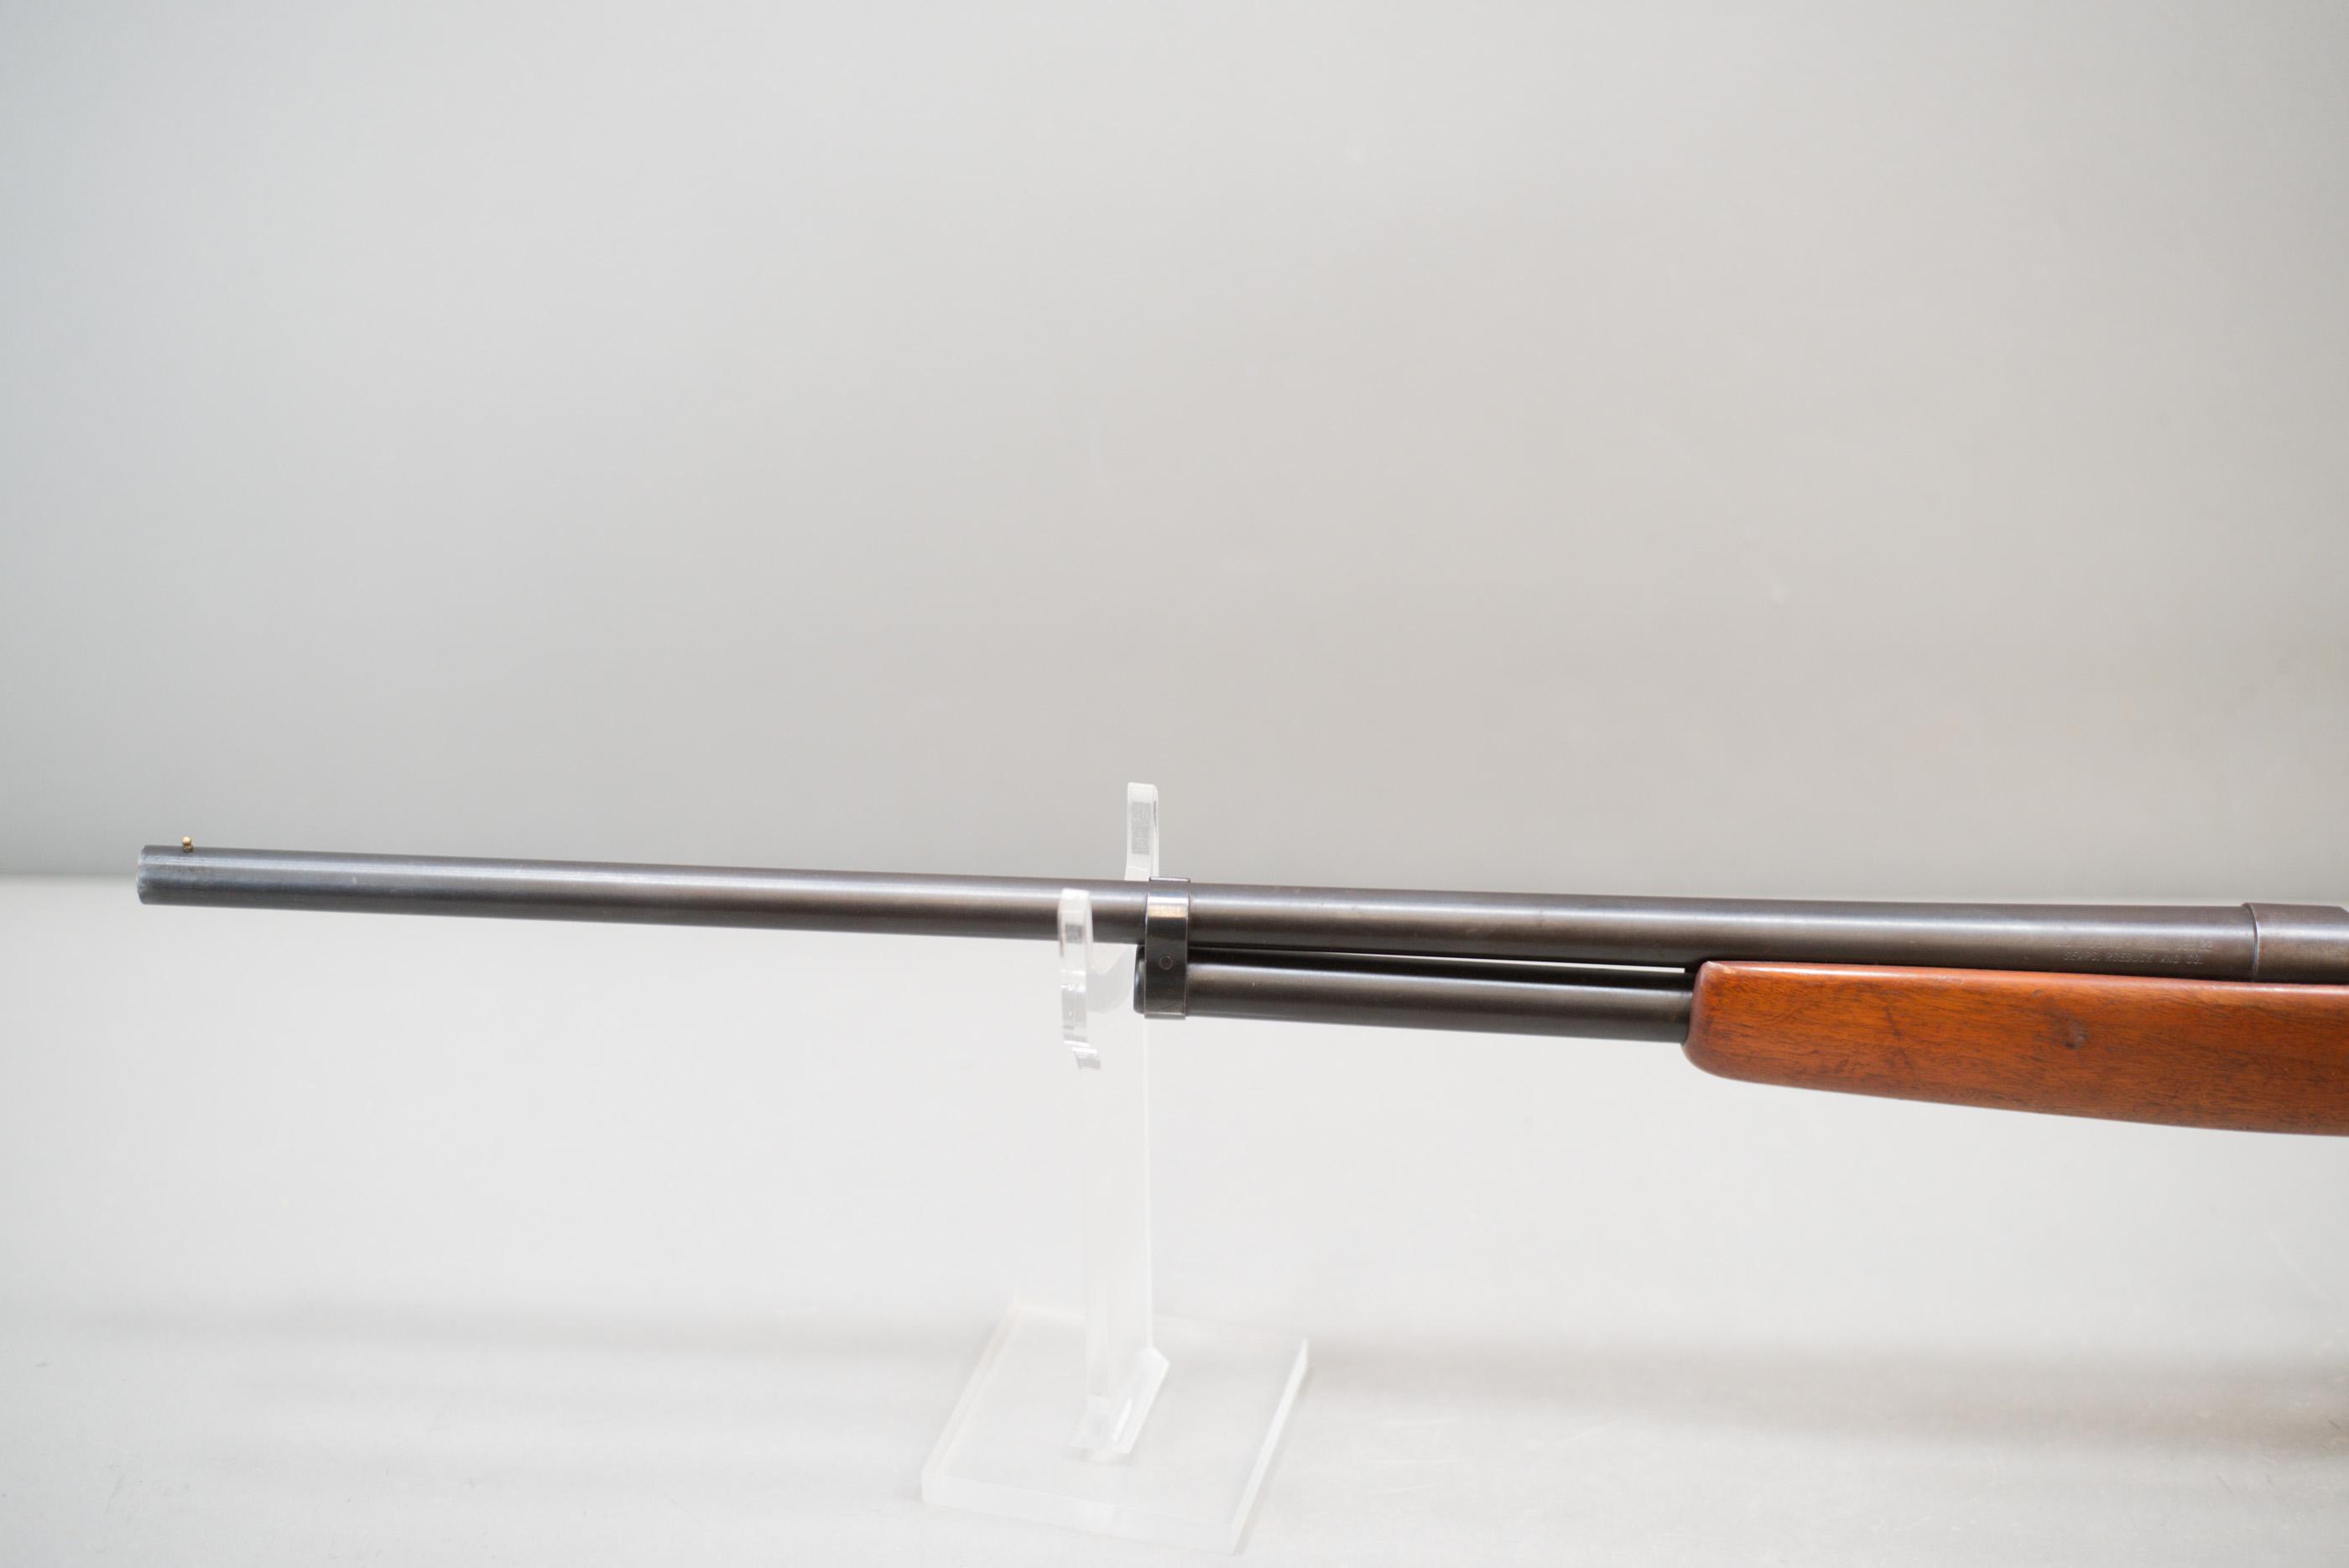 (CR) JC Higgins Model 583.22 20 Gauge Shotgun